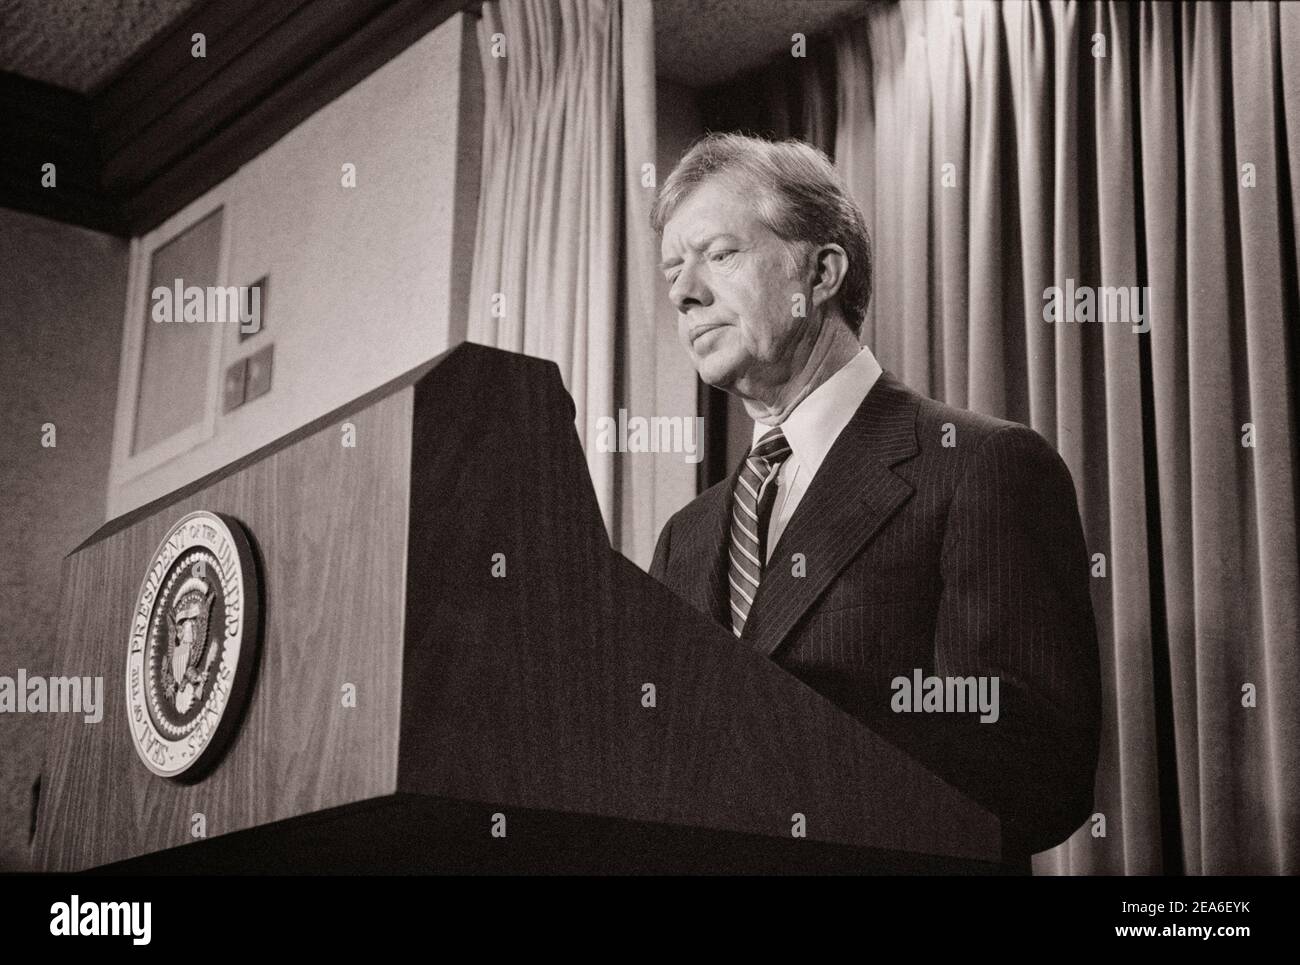 Le président Jimmy carter annonce de nouvelles sanctions contre l'Iran en représailles pour avoir pris des otages américains. 7 avril 1980. Banque D'Images